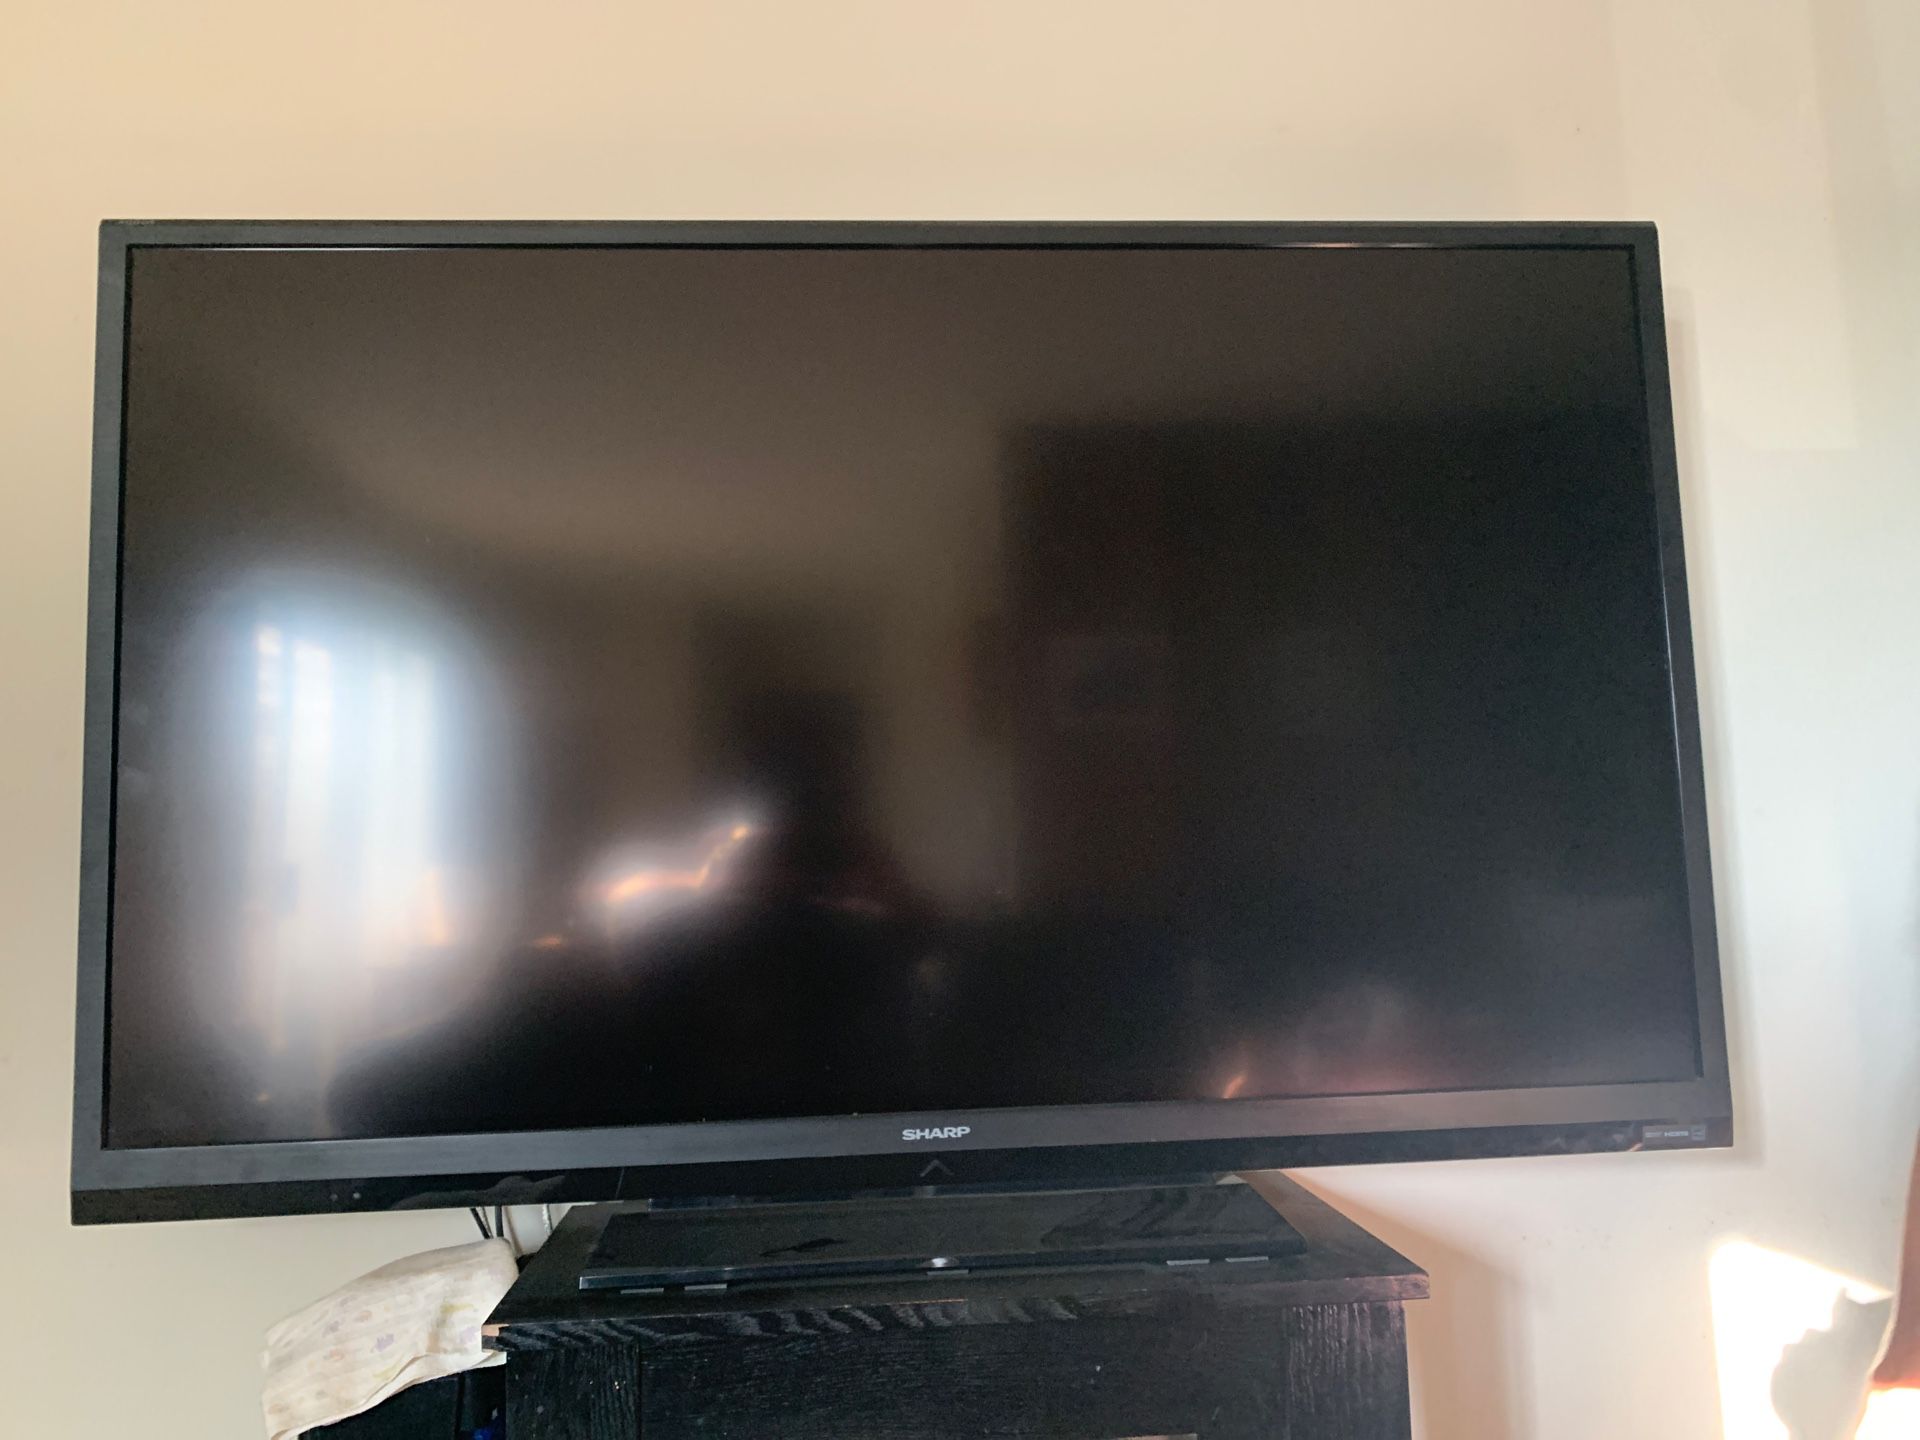 60 inch sharp flat screen TV